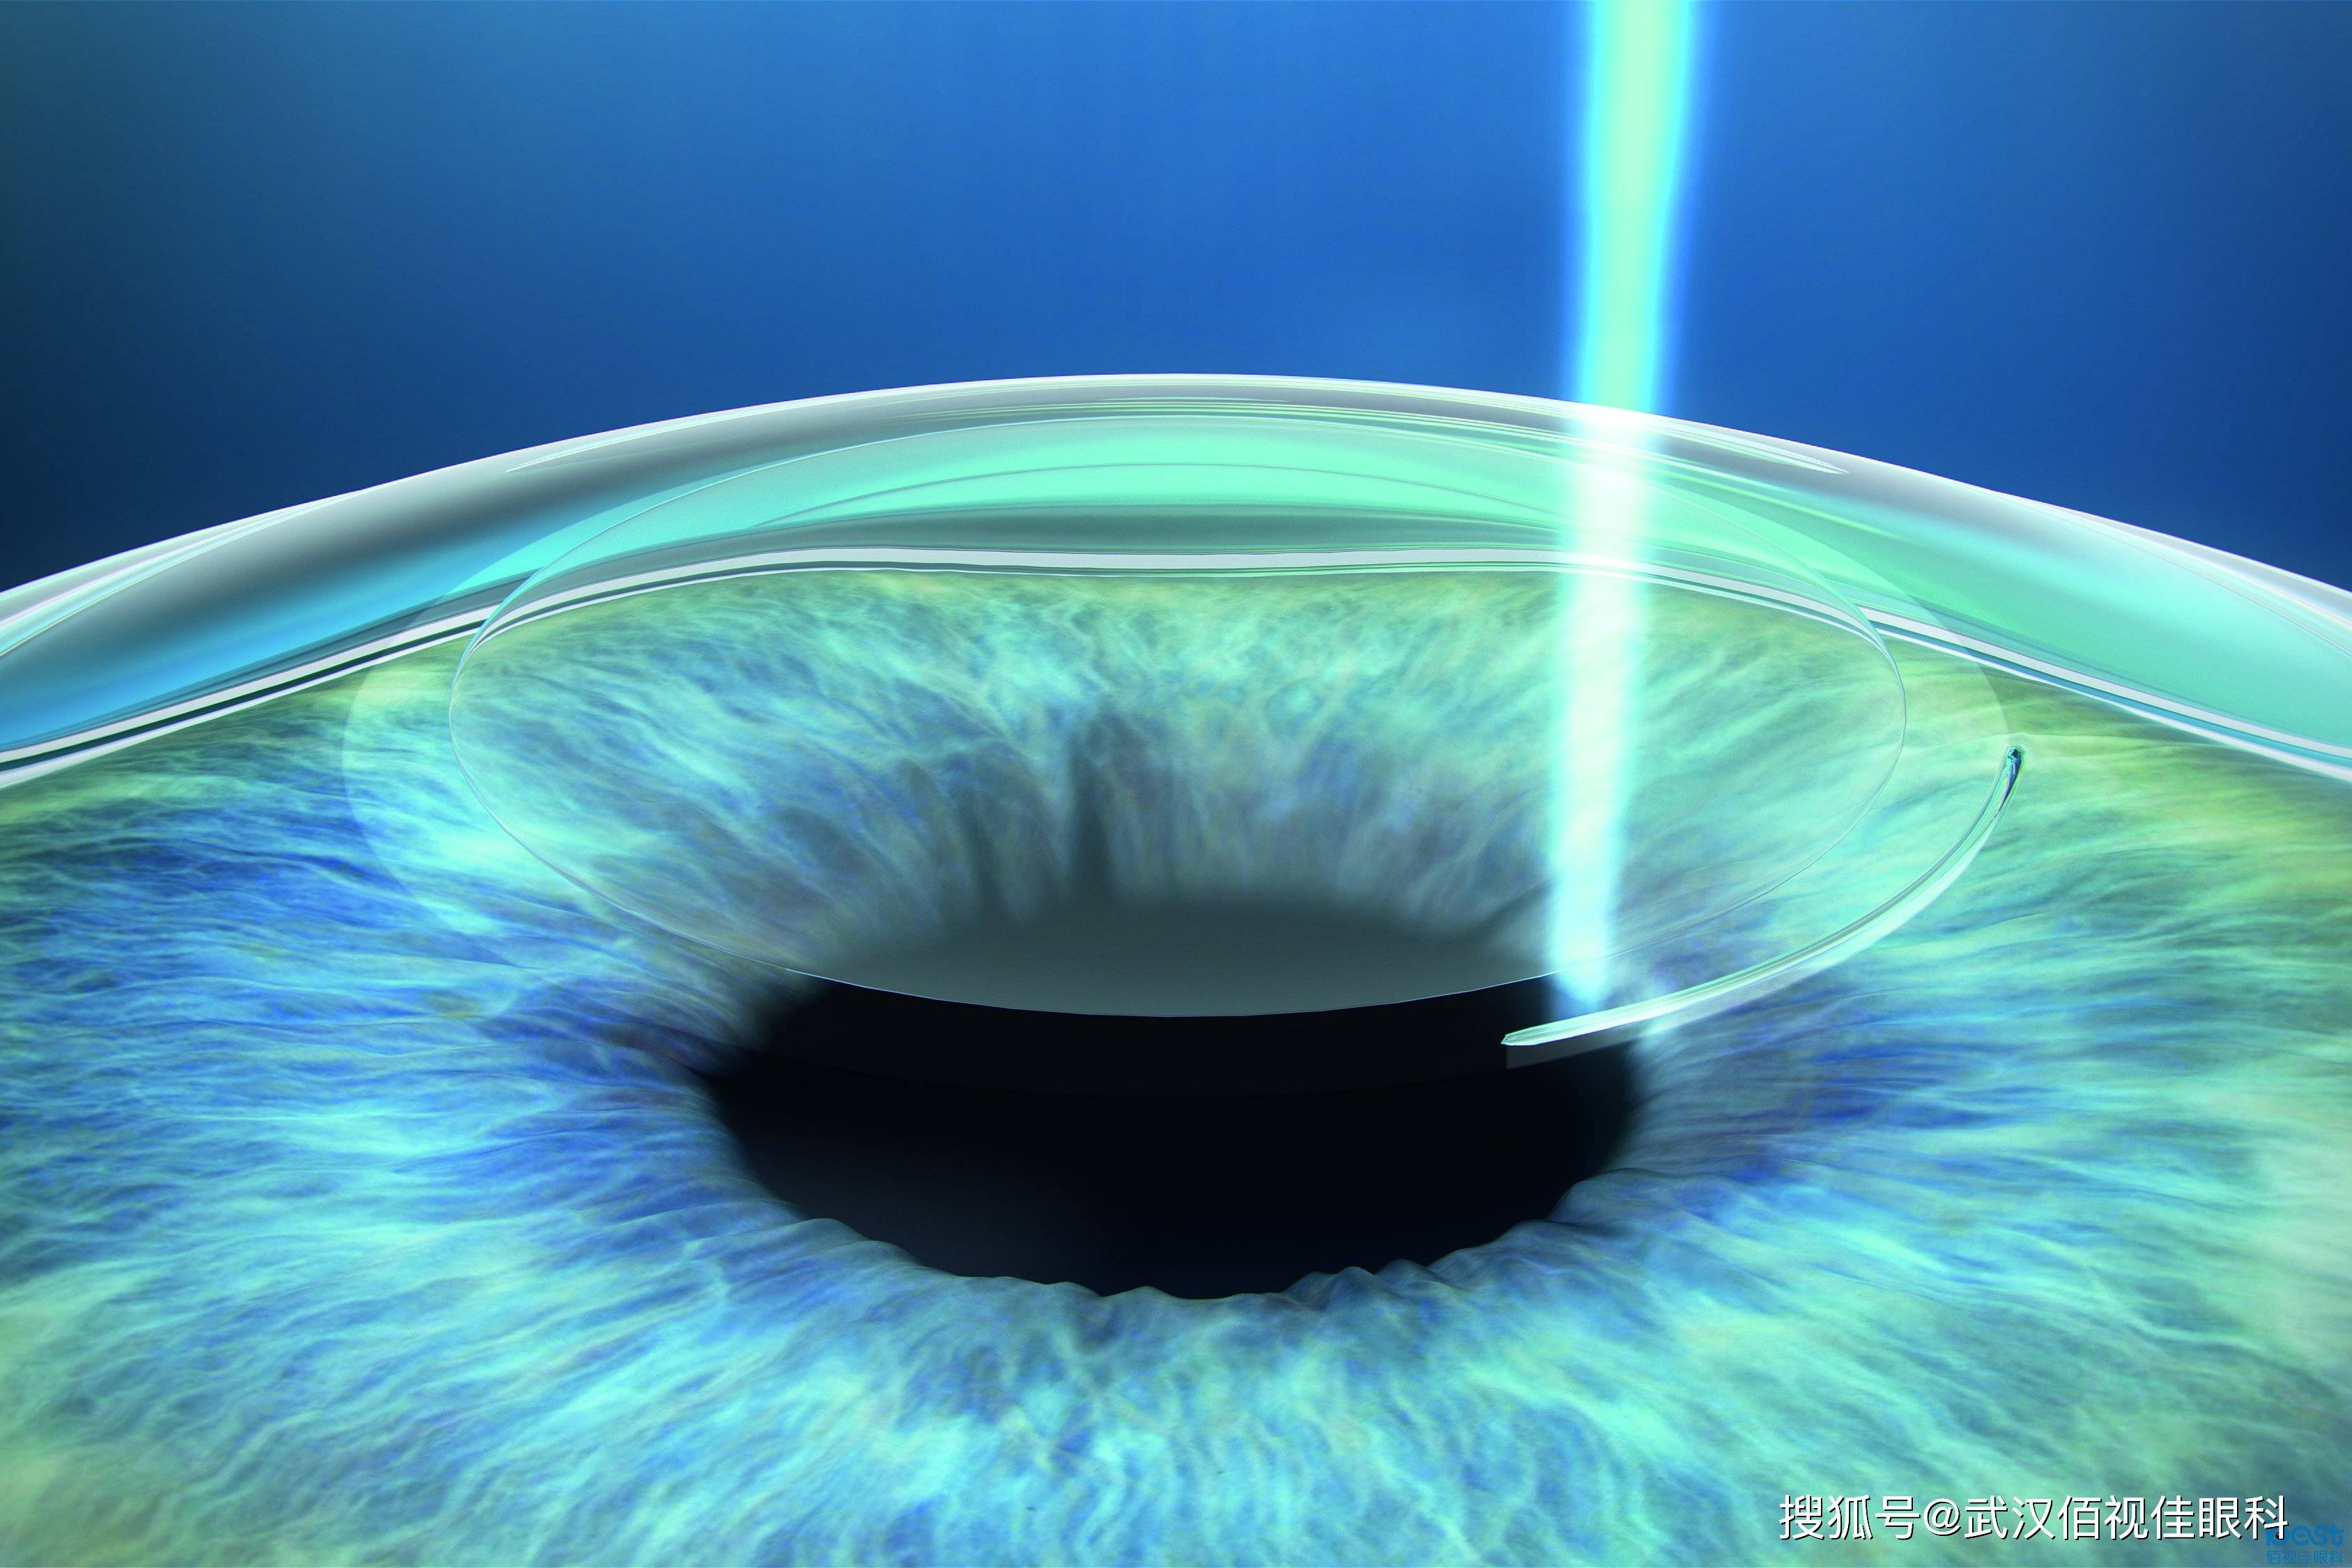 目前比较常见的近视矫正手术主要有全飞秒(个性化)半飞秒,全激光,icl